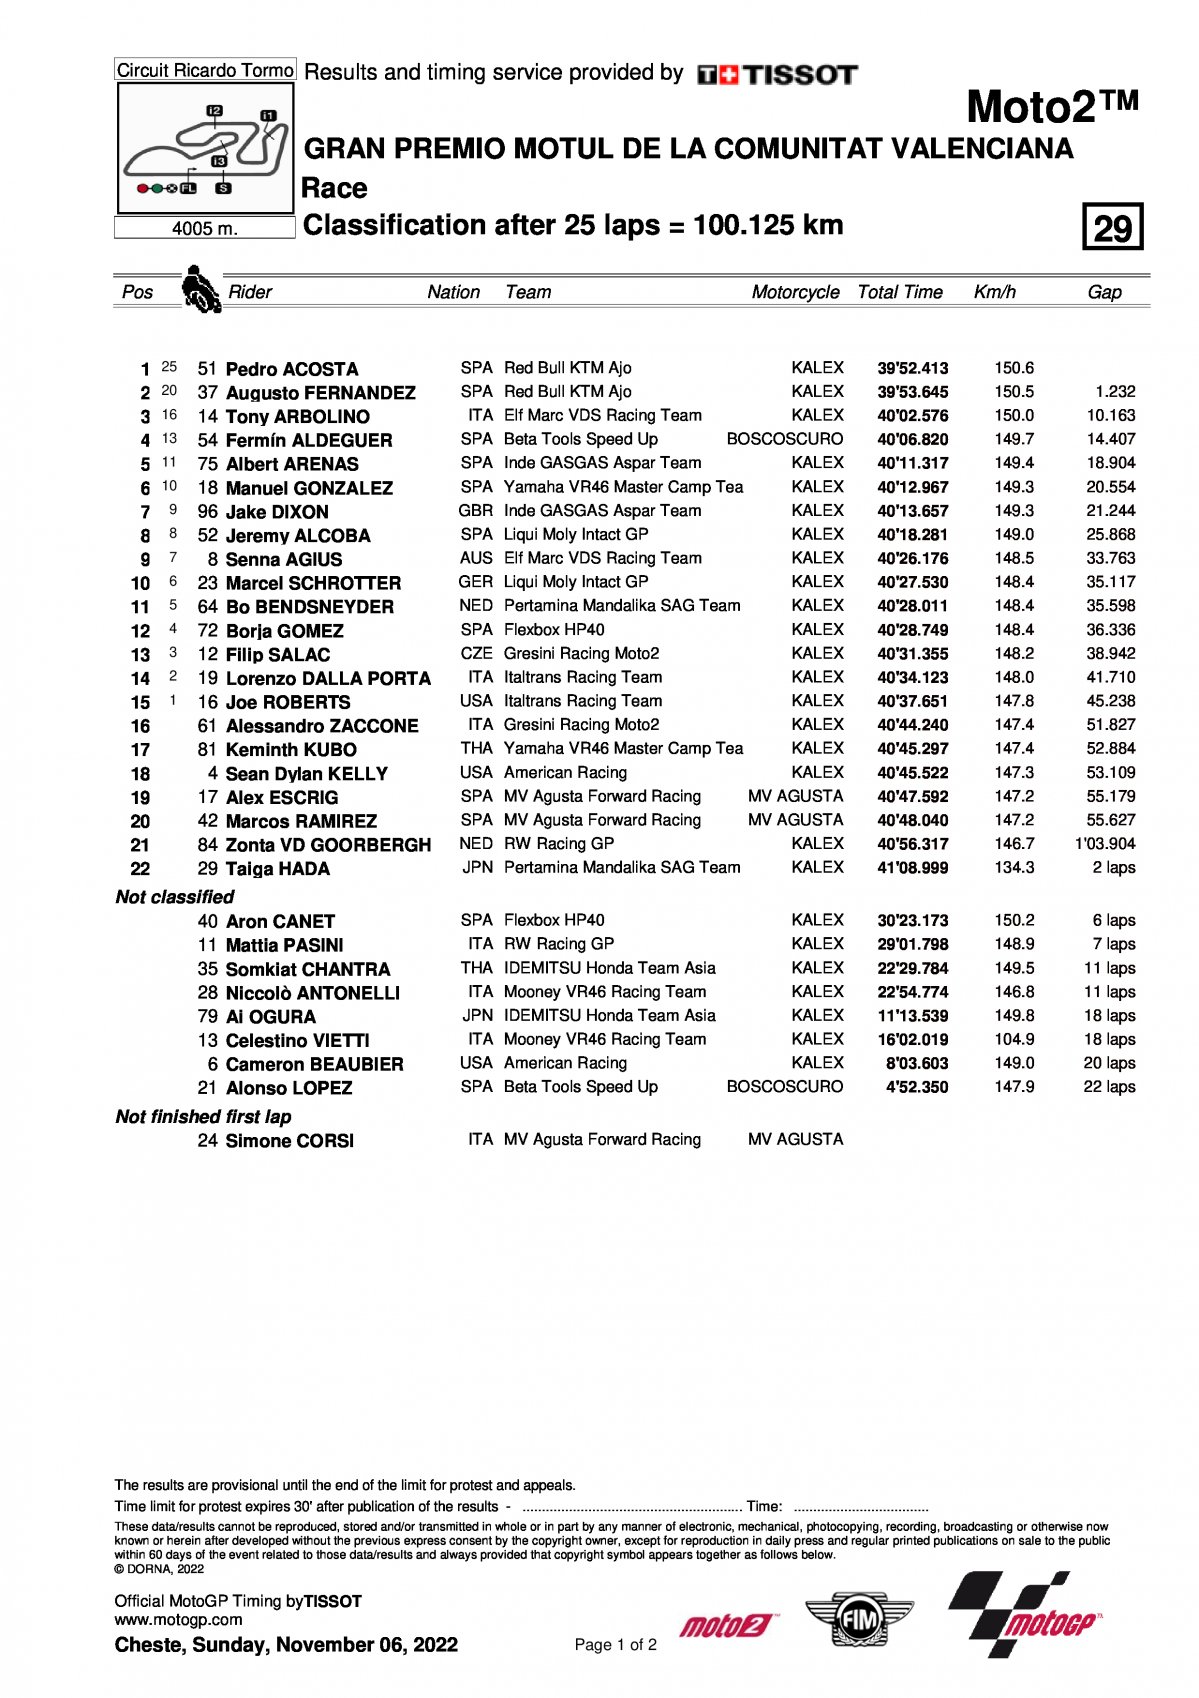 Результаты Гран-При Валенсии Moto2 (6/11/2022)